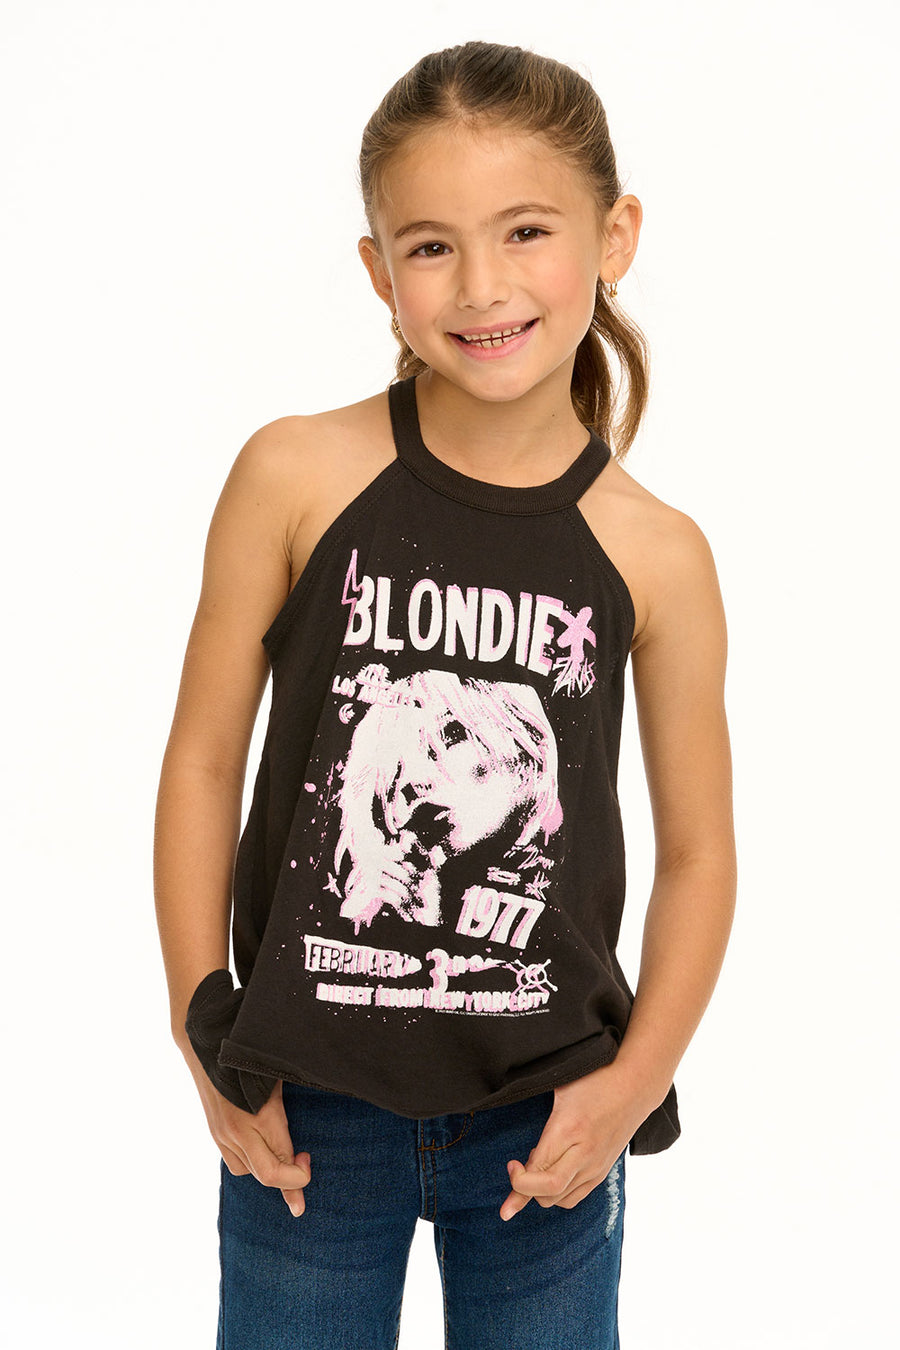 Blondie  - 1977 Flouncy Tank GIRLS chaserbrand